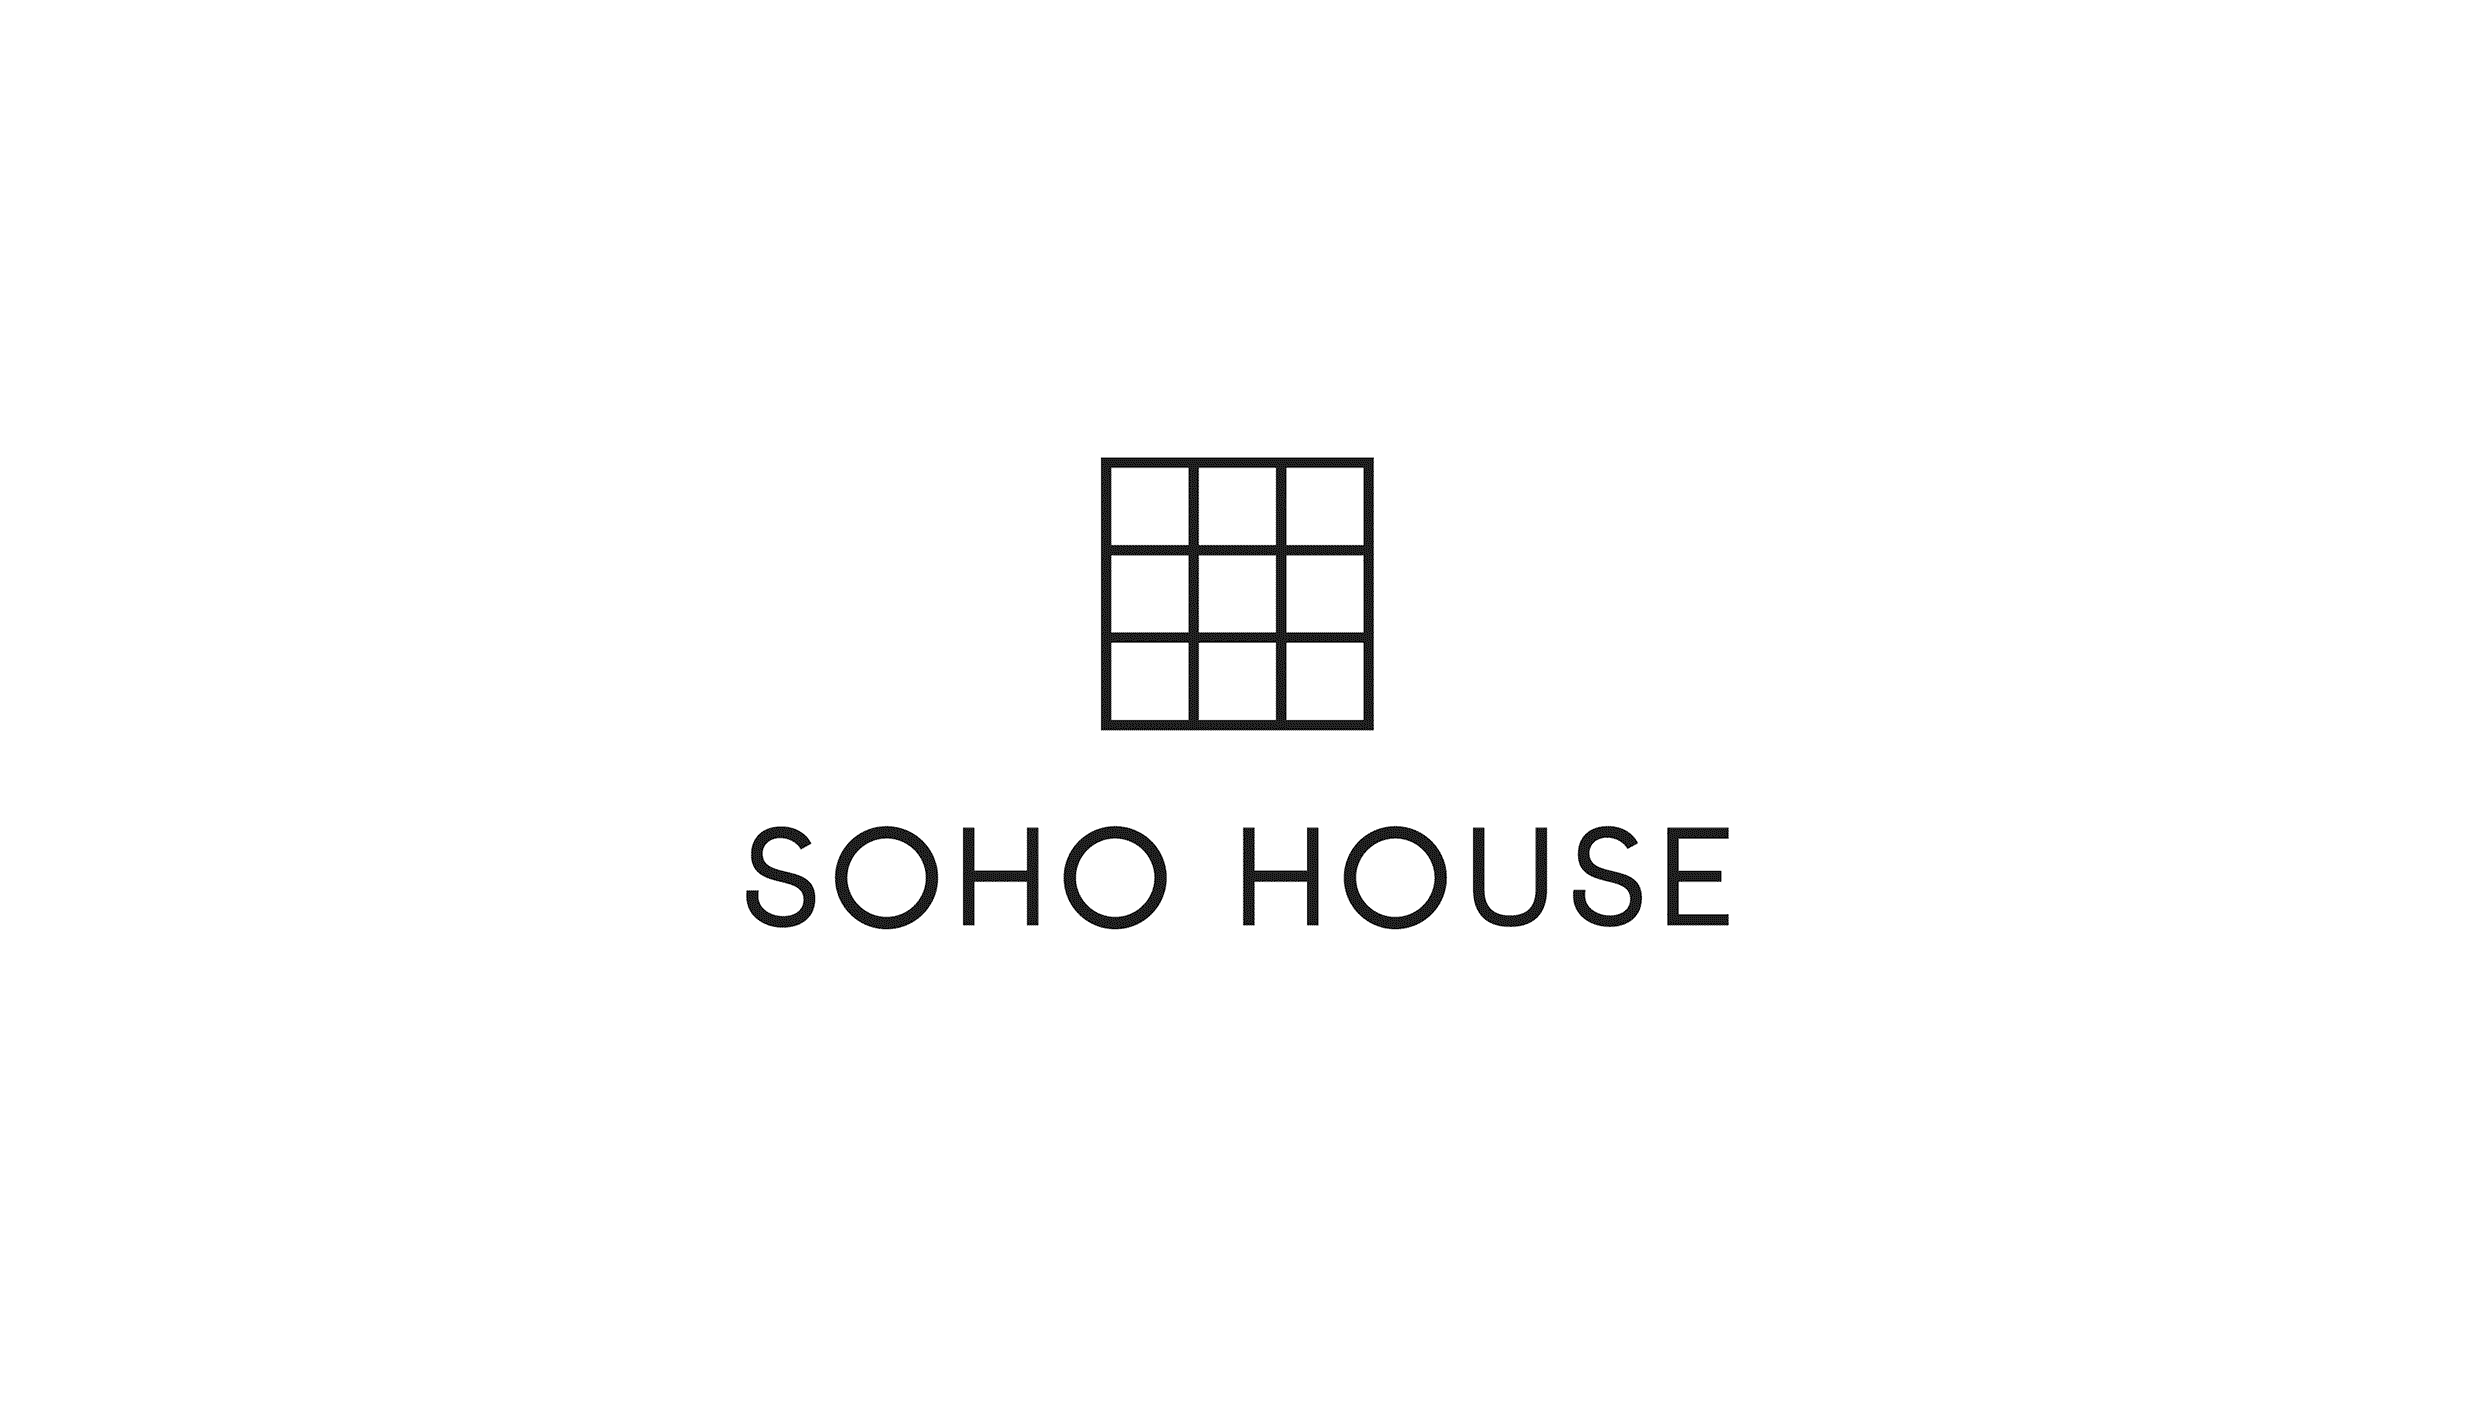 Soho House logos